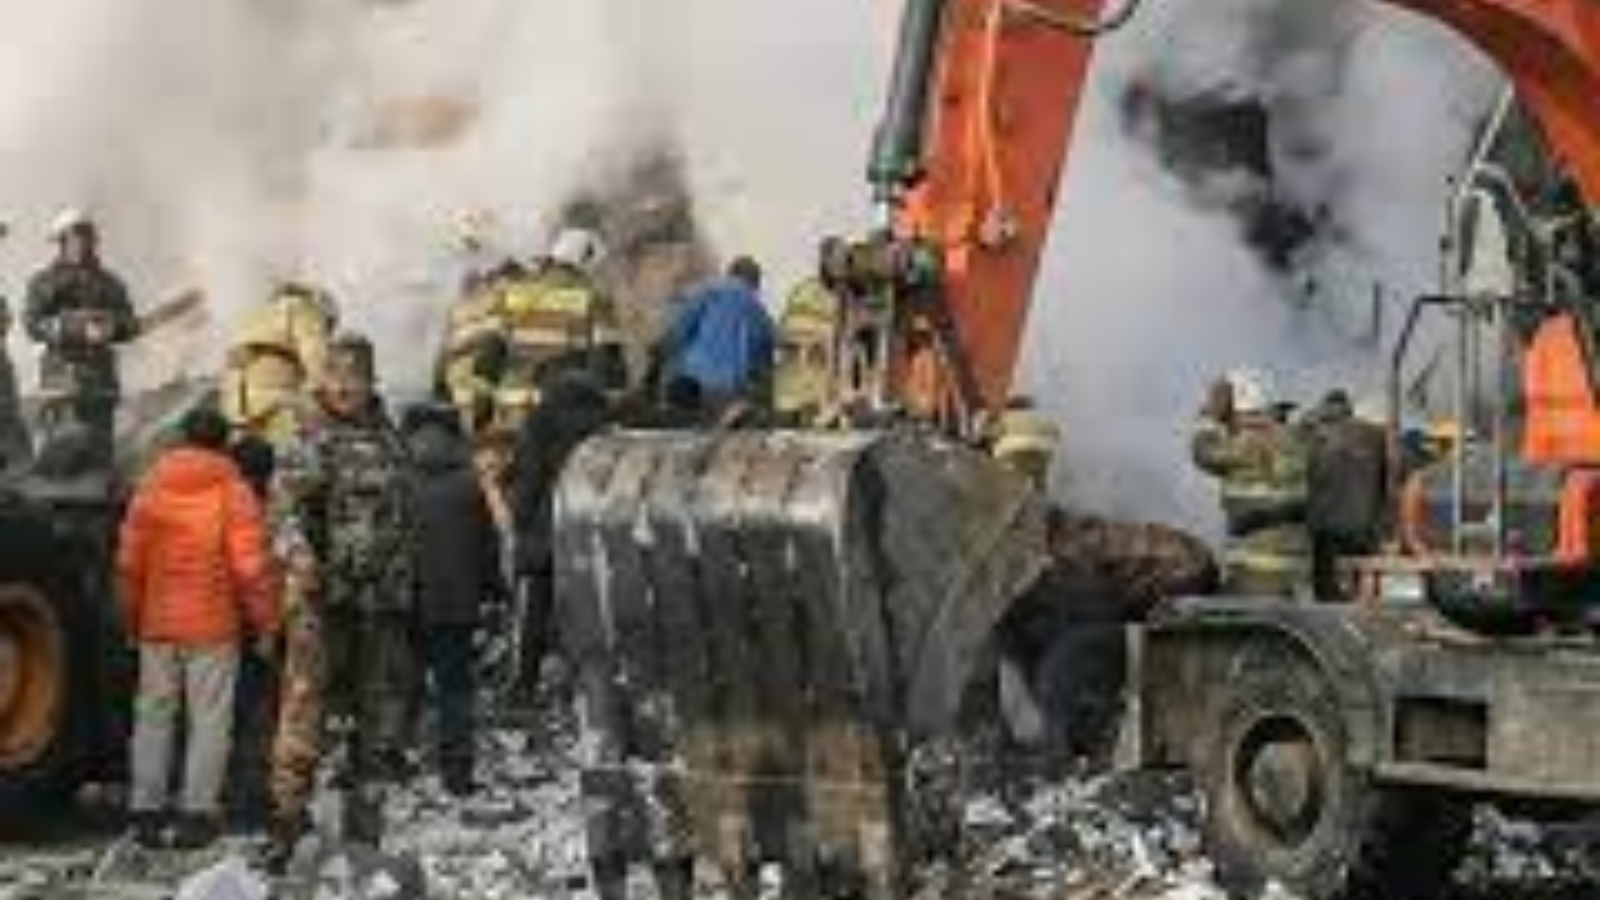 قال الحاكم المحلي إن الانفجار الغازي المشتبه به في مبنى سكني من خمسة طوابق أسفر عن مقتل تسعة أشخاص في جزيرة سخالين جنوب شرق روسيا